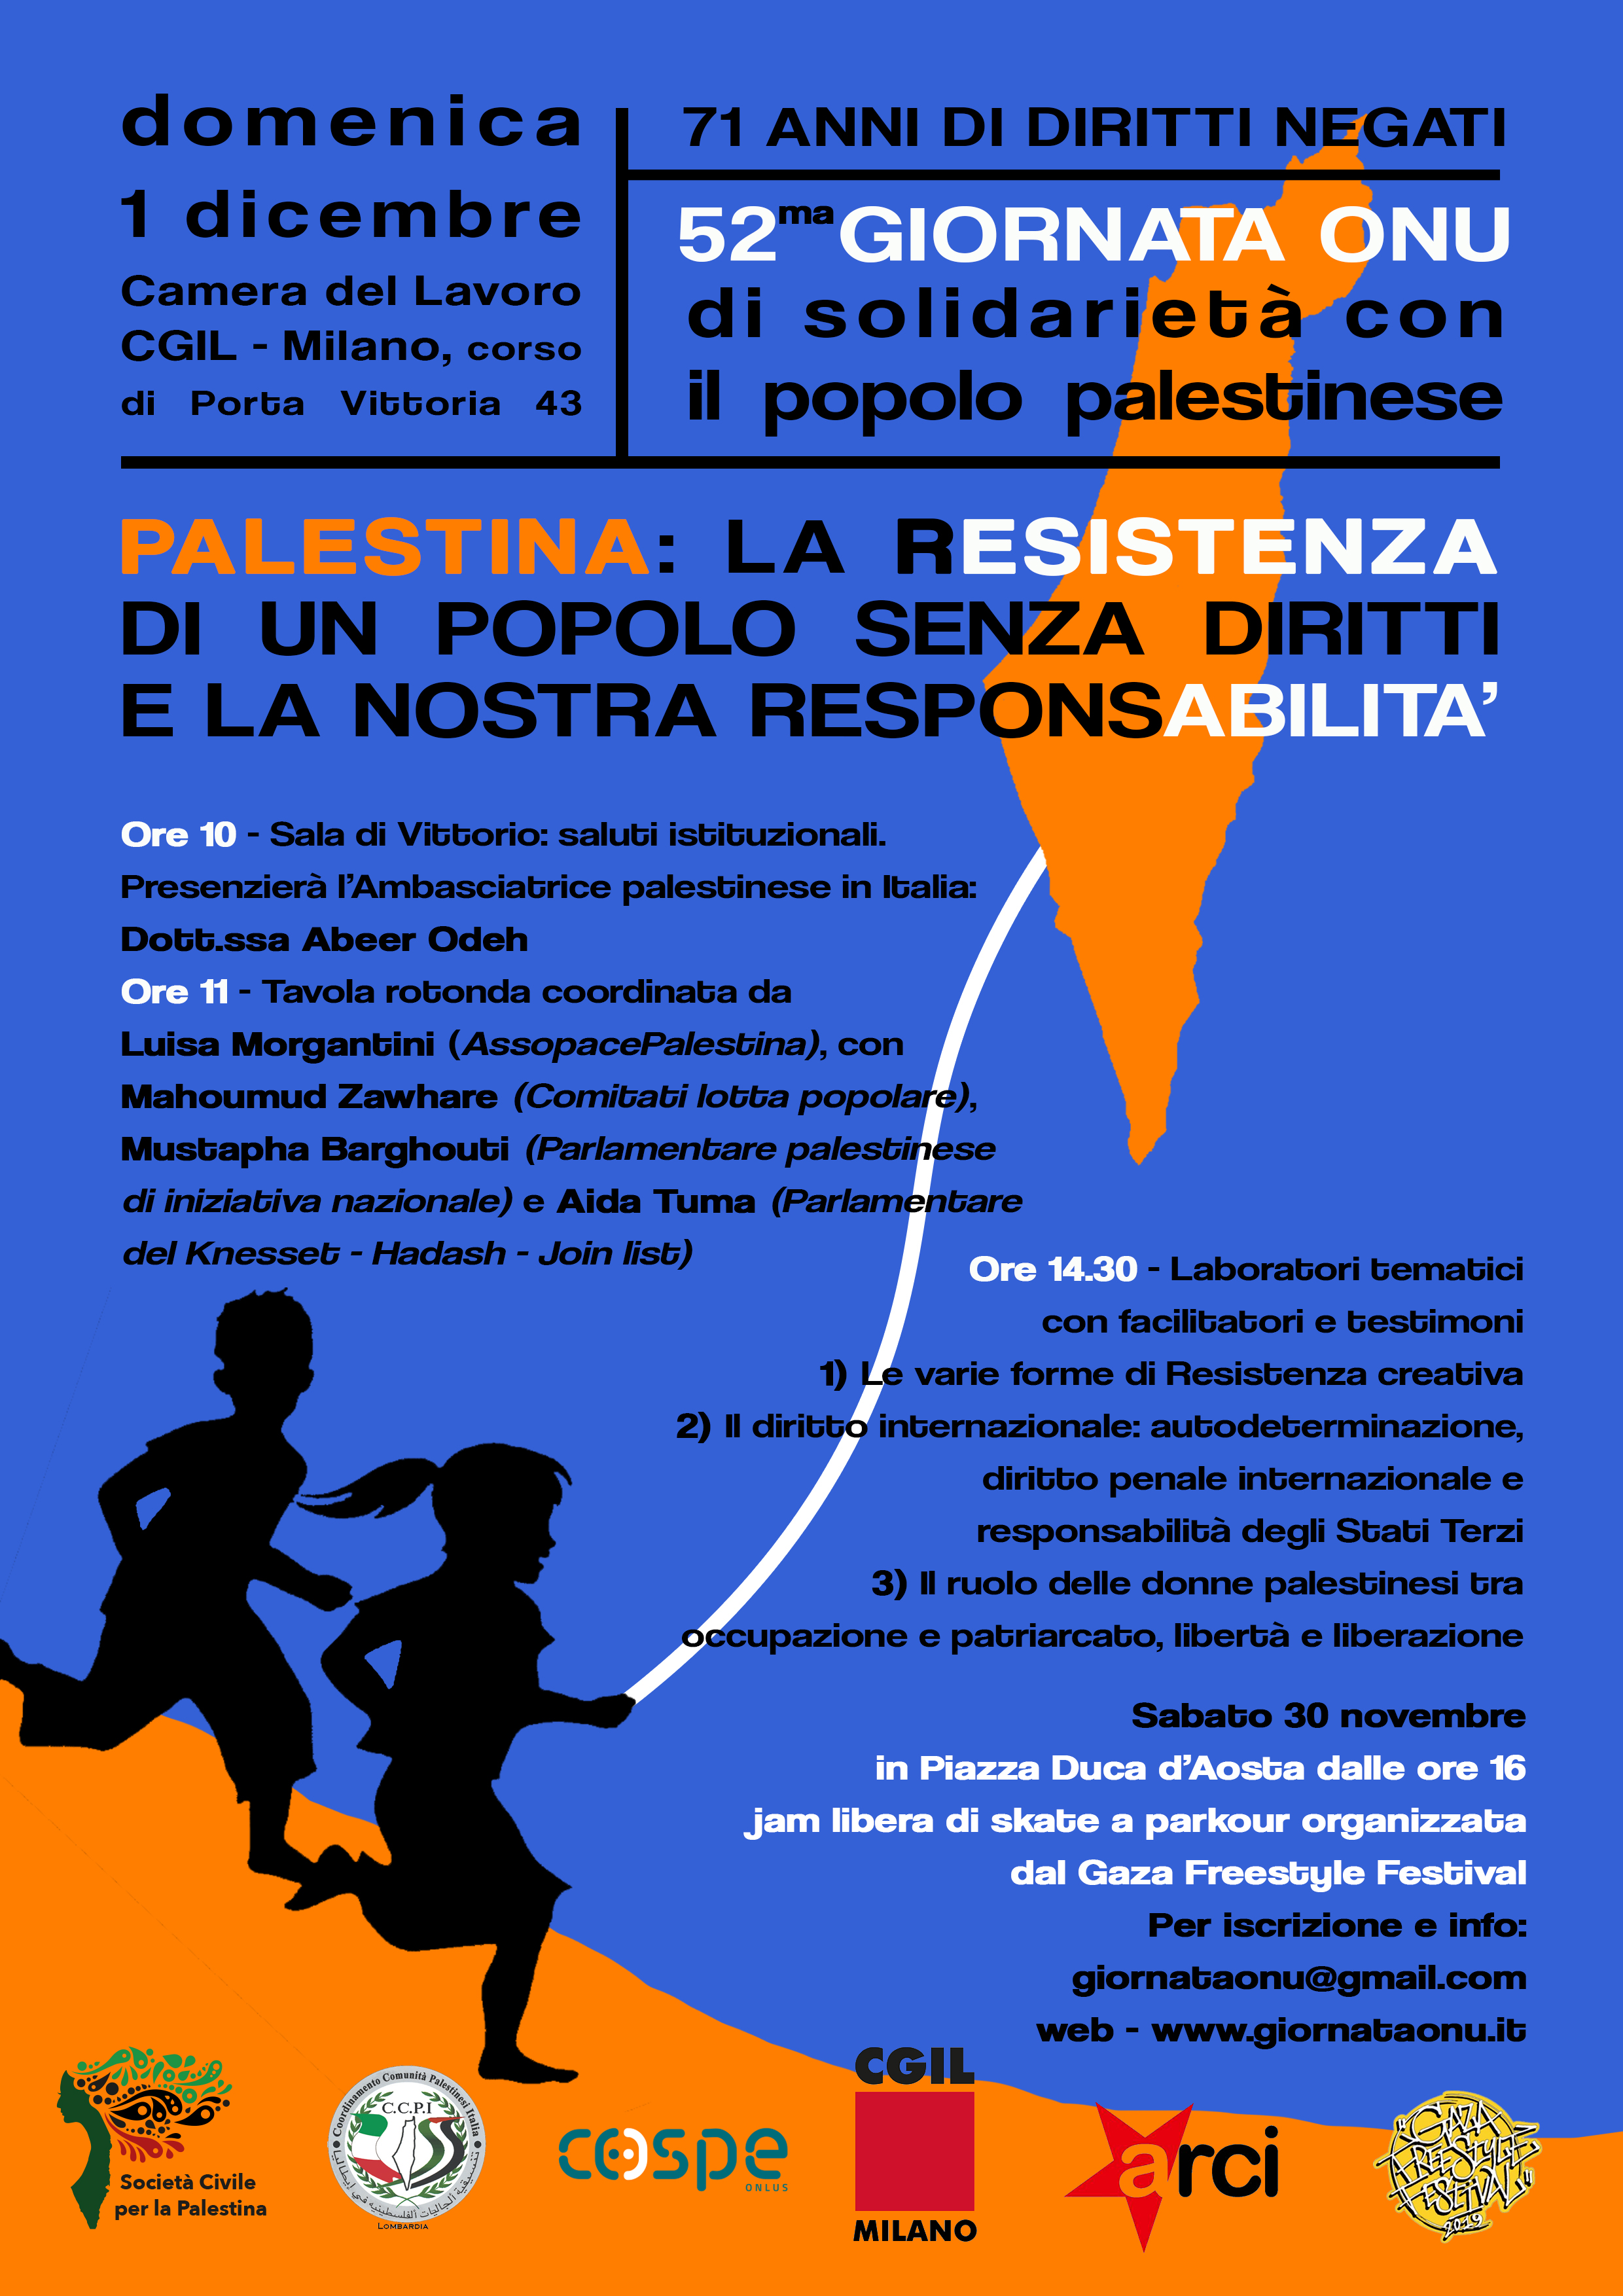 Milano, 1 dicembre: Giornata ONU di solidarietà con la Palestina